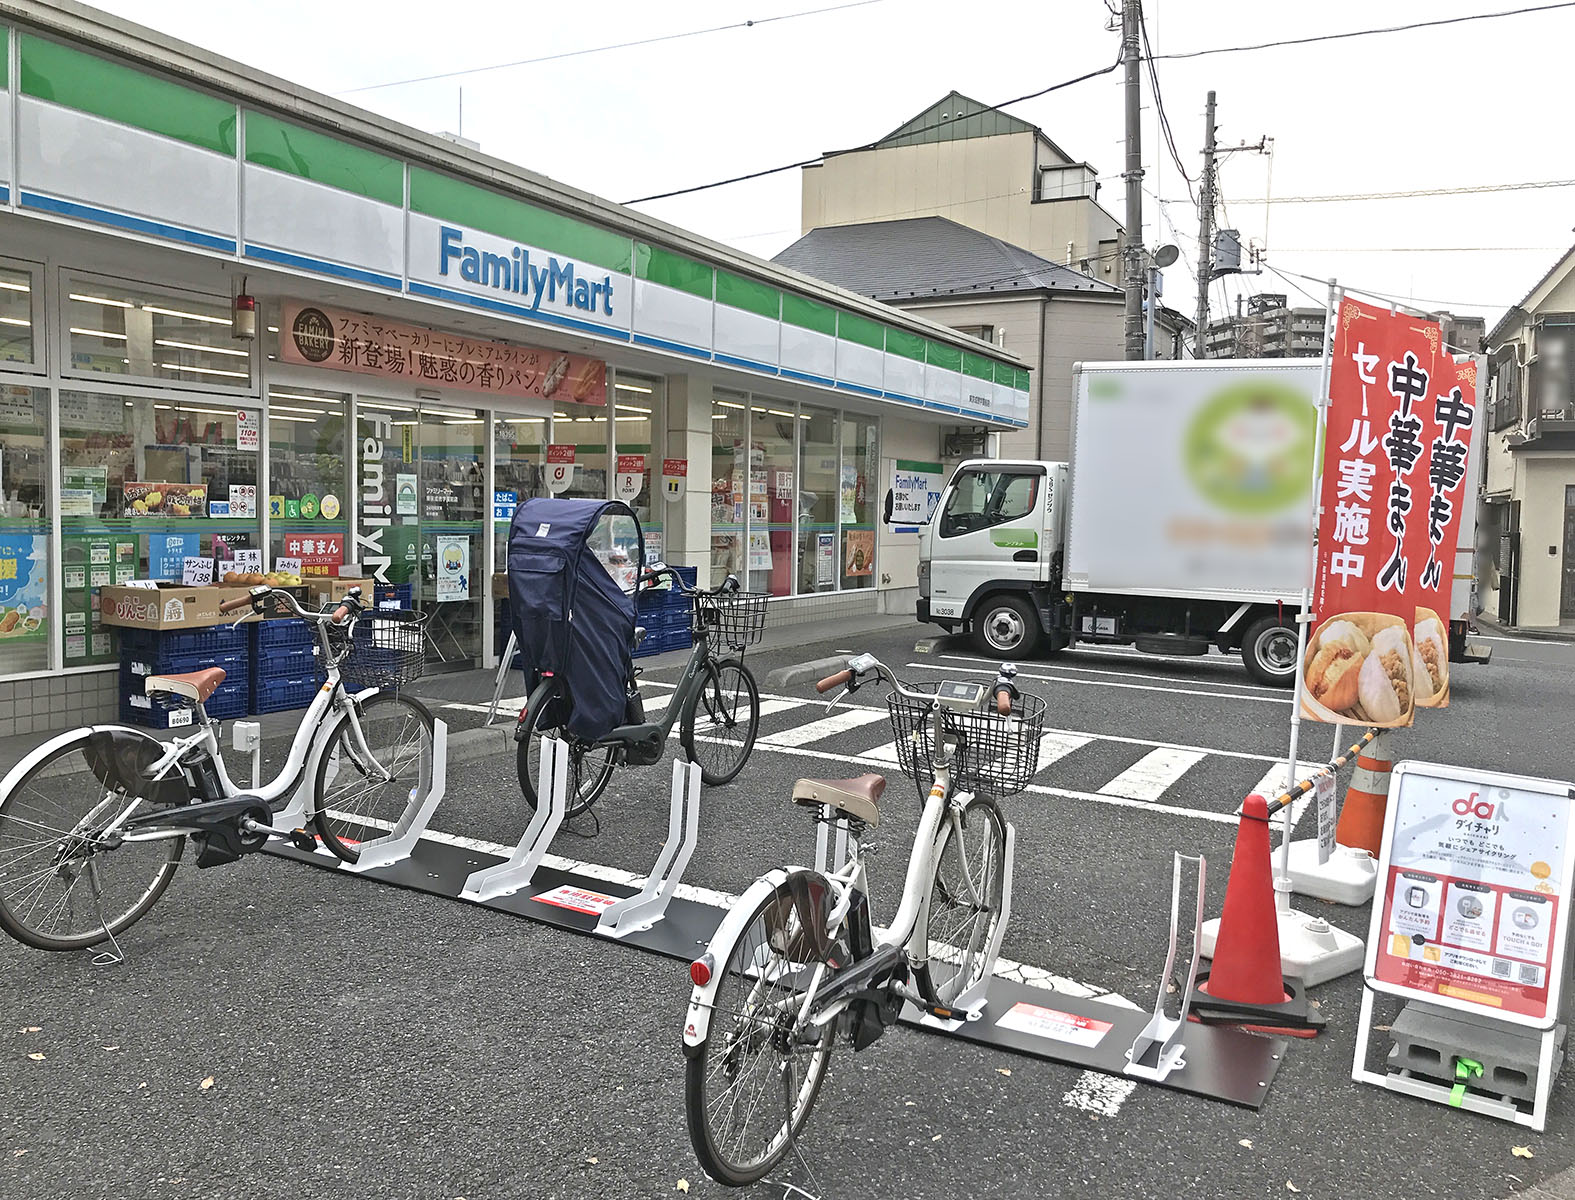 ファミリーマート 東京成徳学園前店 (HELLO CYCLING ポート) image